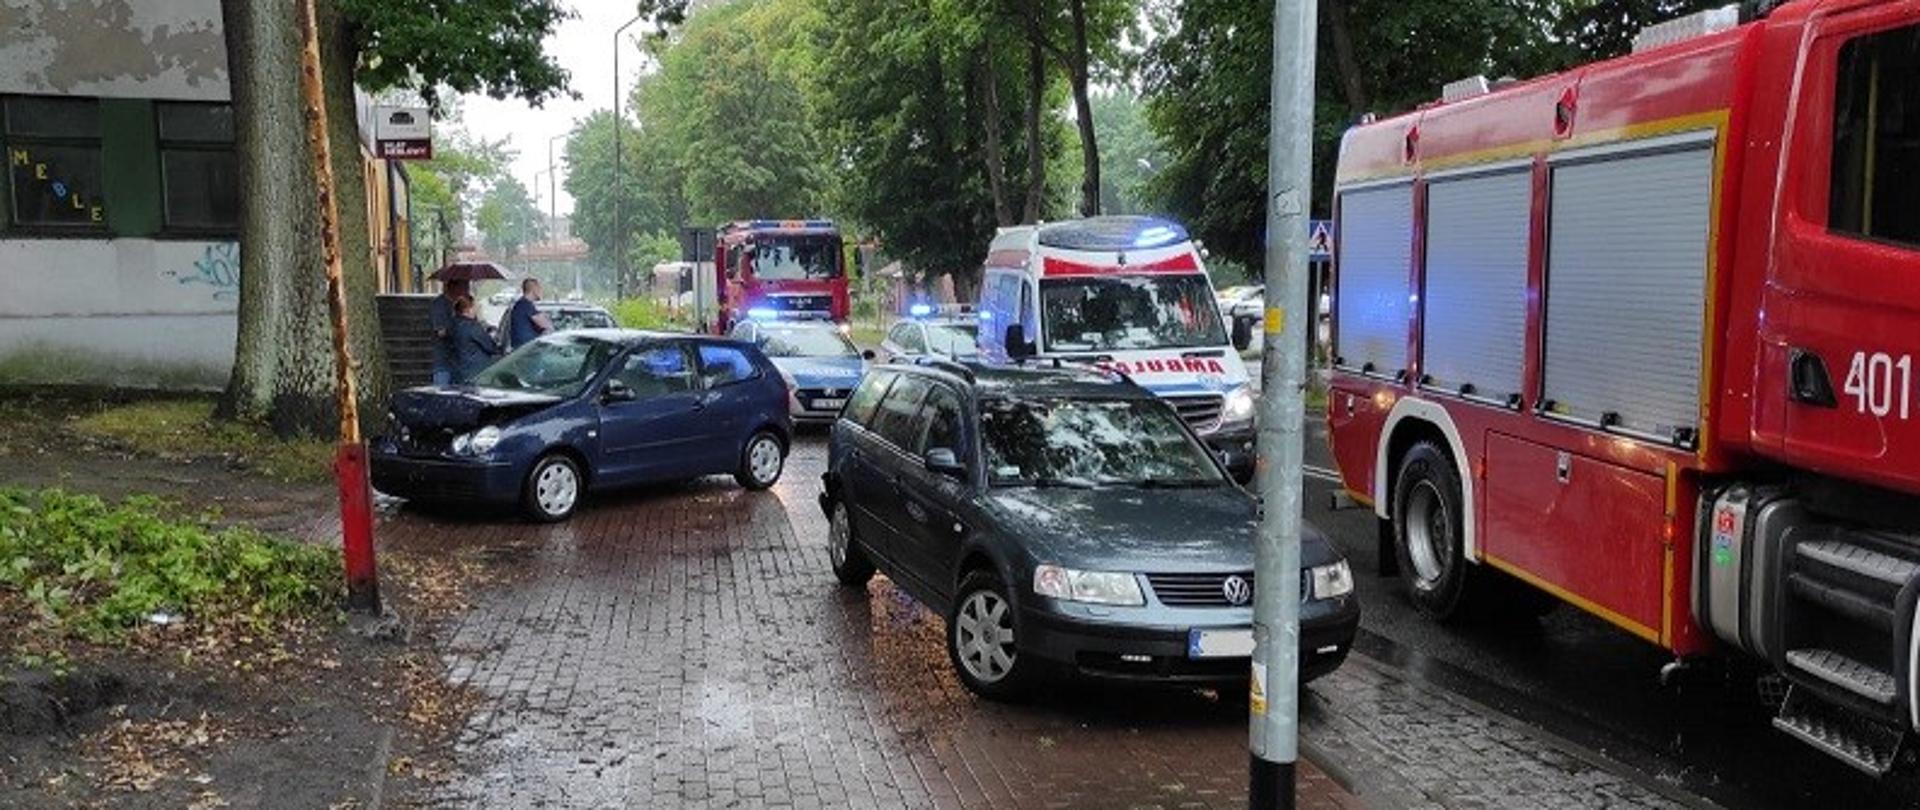 Zdjęcie przedstawia ulicę Drzymały w Białogardzie, gdzie doszło do kolizji pojazdów. Na zdjęciu stojące na chodniku pojazdy VW Polo i VW Passat. Na ulicy stoją pojazdy straży pożarnej, pogotowia ratunkowego i policji